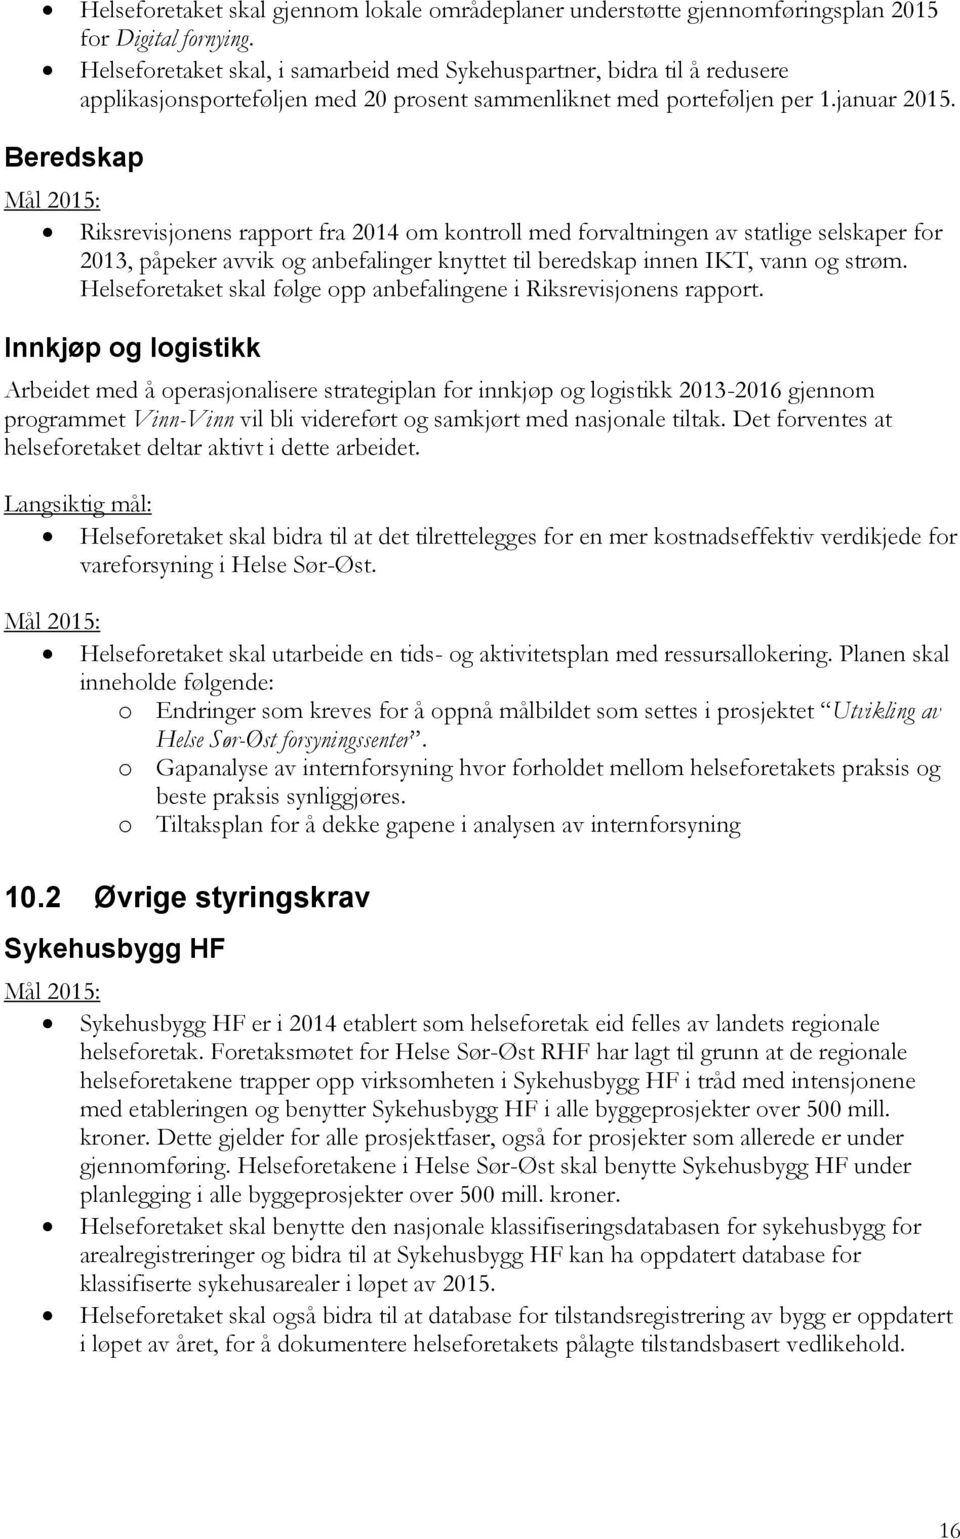 Beredskap Riksrevisjonens rapport fra 2014 om kontroll med forvaltningen av statlige selskaper for 2013, påpeker avvik og anbefalinger knyttet til beredskap innen IKT, vann og strøm.